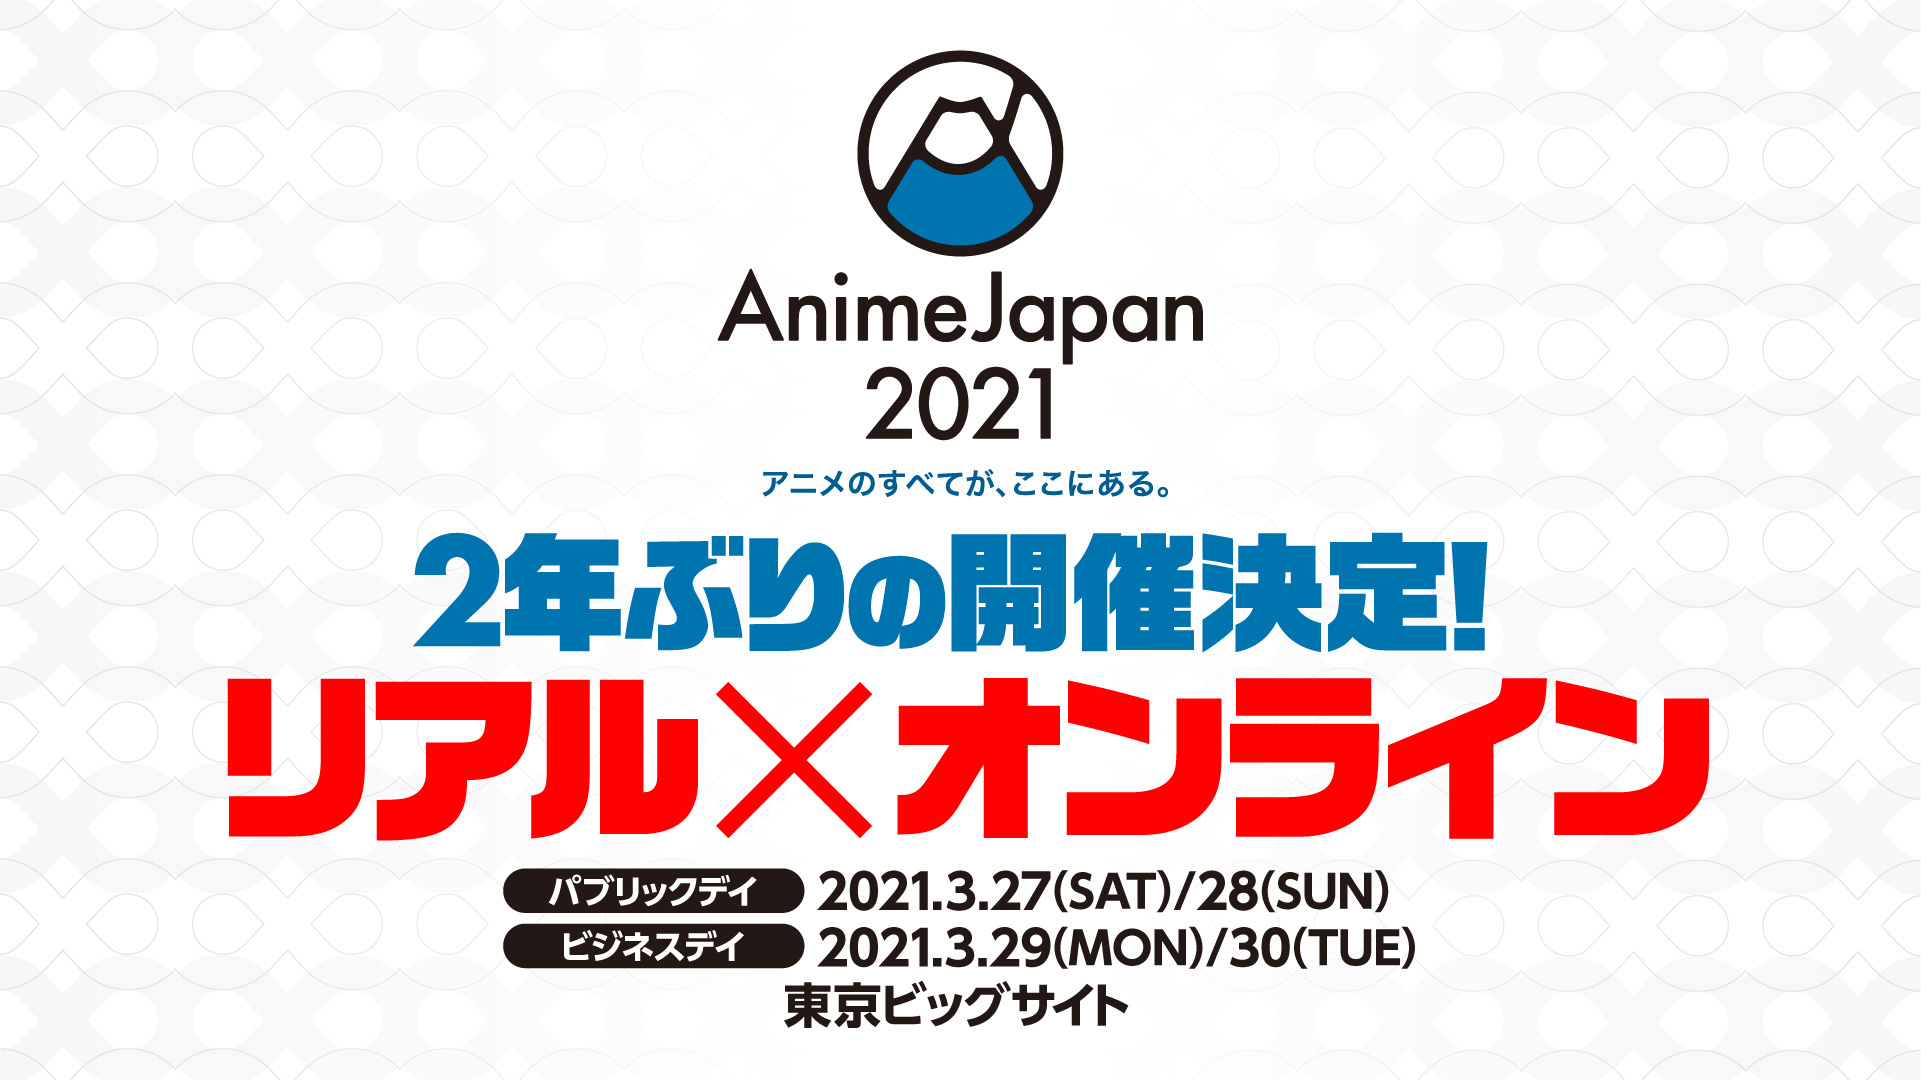 世界最大級のアニメイベント Animejapan 21 がリアルとオンラインで２年ぶりの開催決定 Spice エンタメ特化型情報メディア スパイス